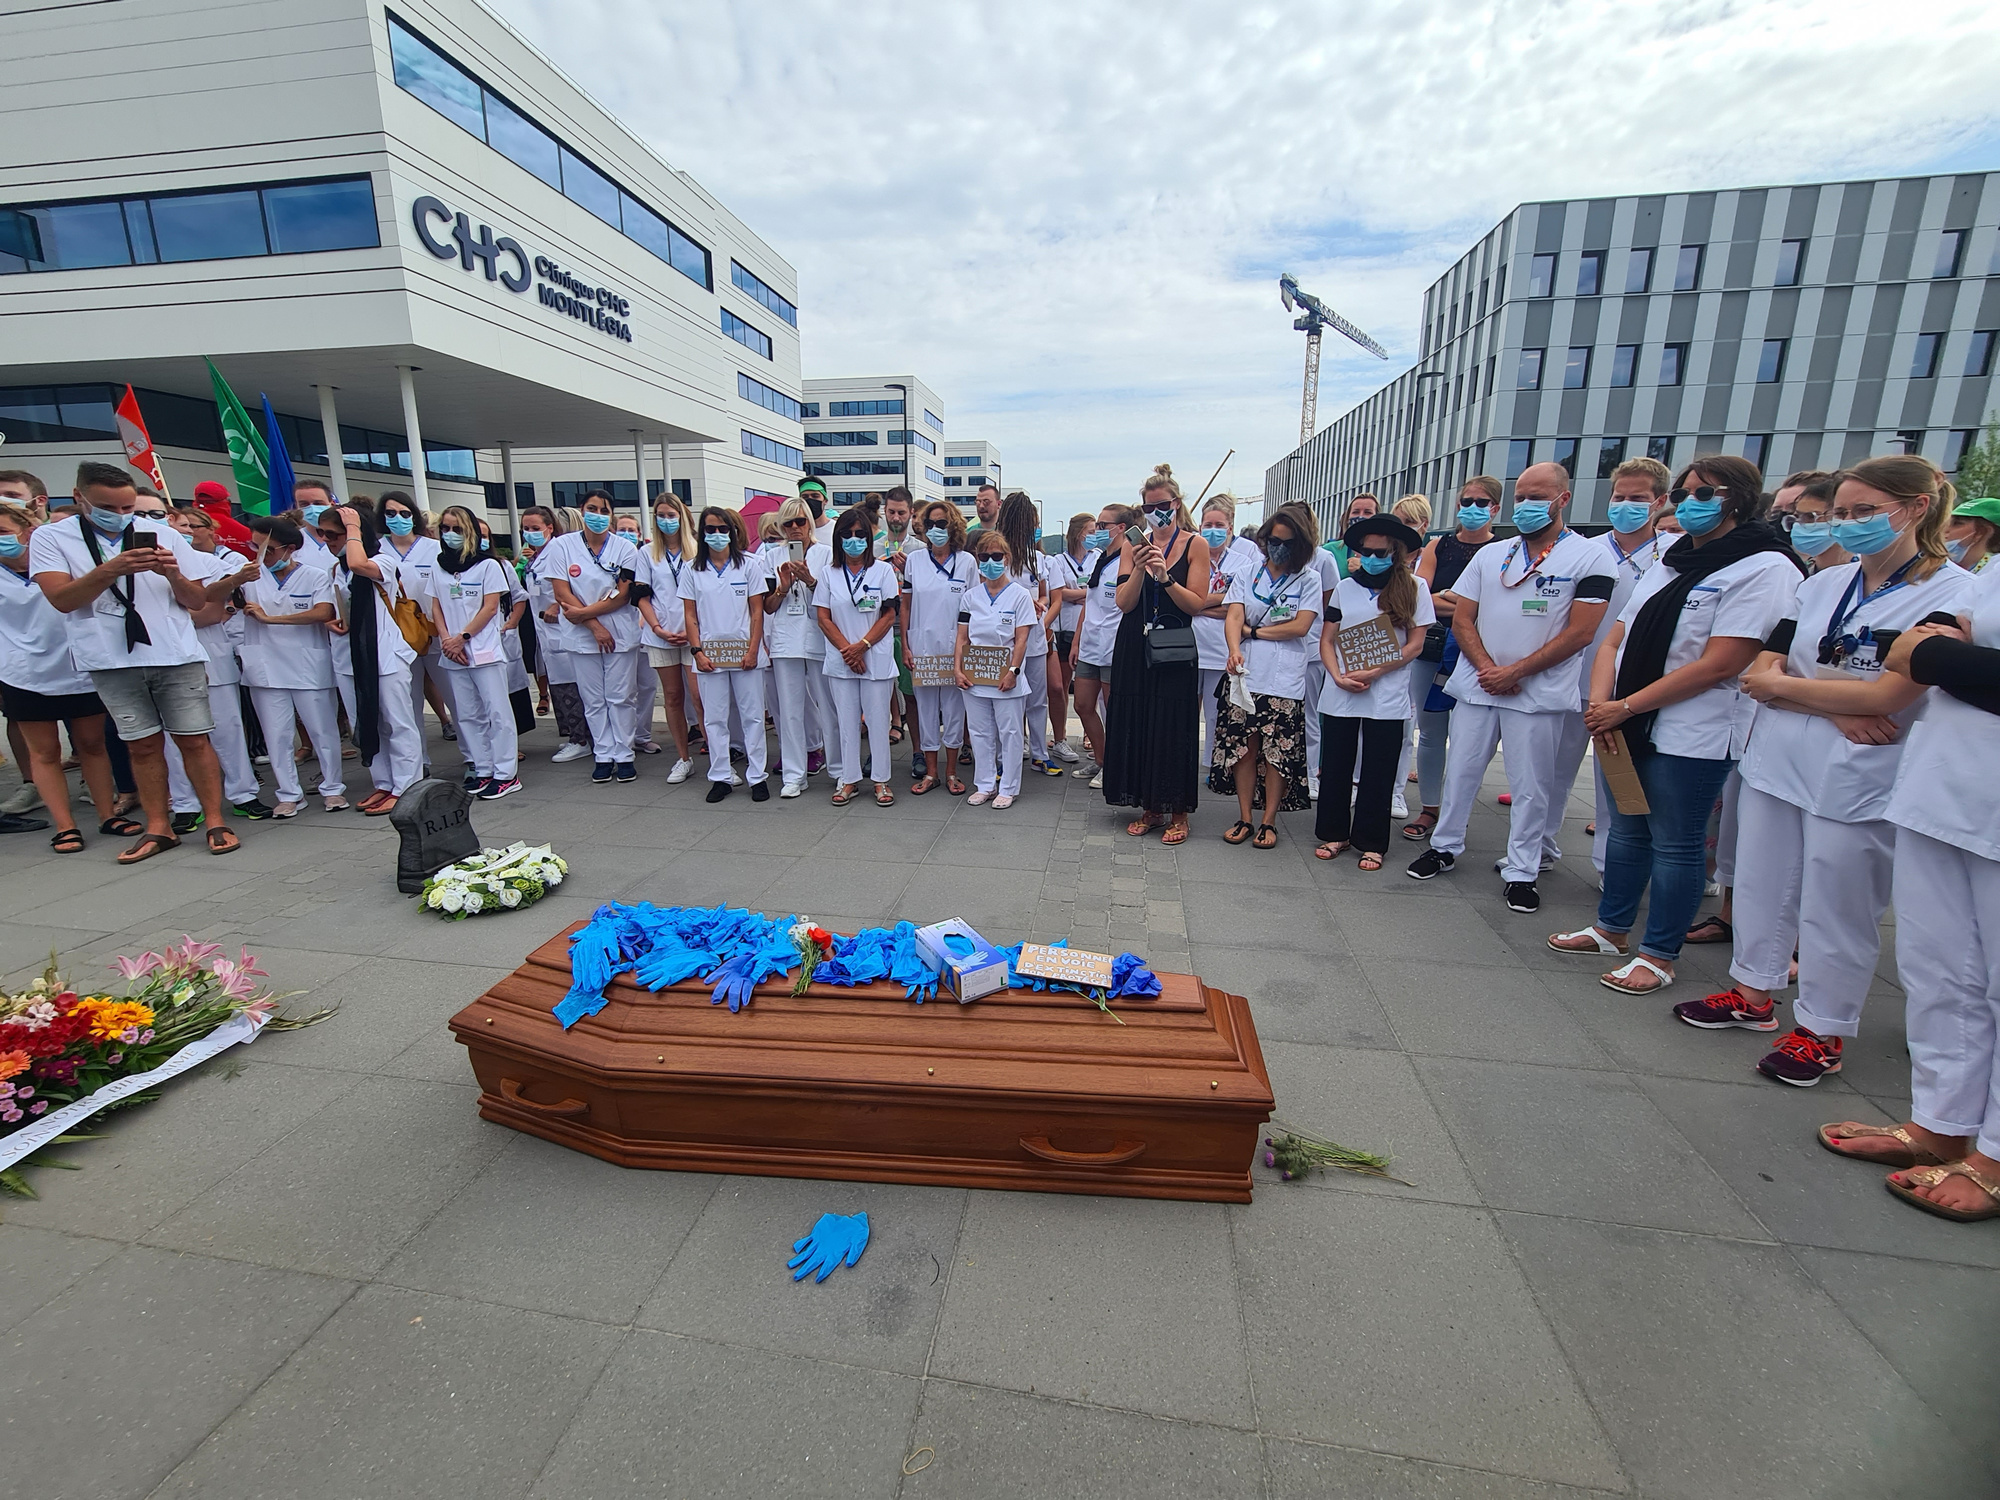 Manifestation du personnel soignant au CHC Montlegia de Liège le 17 juin 2021., BELGA